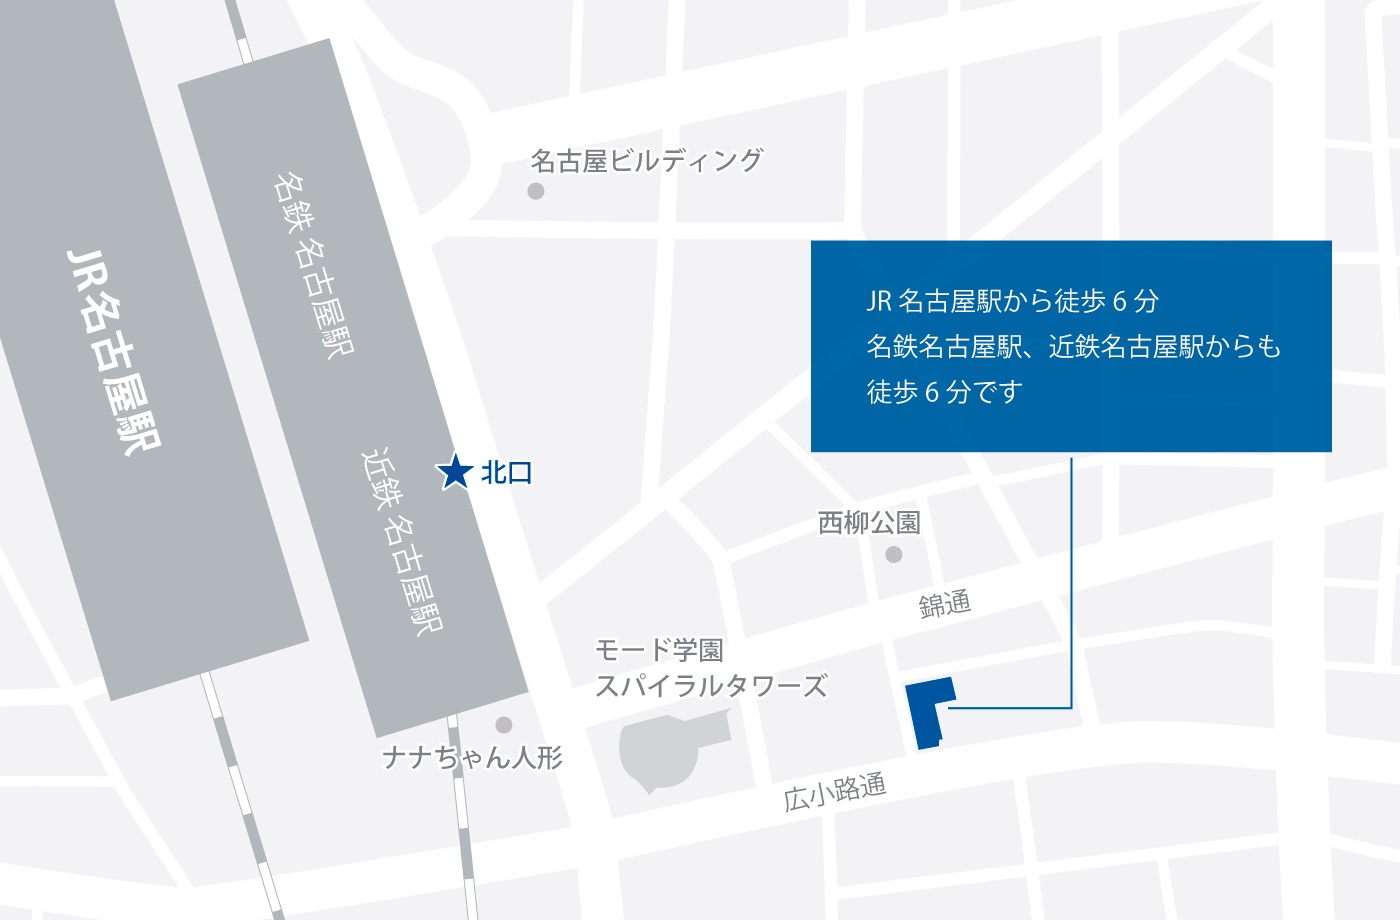 名古屋拠点までの地図です。地図に続いて詳細。